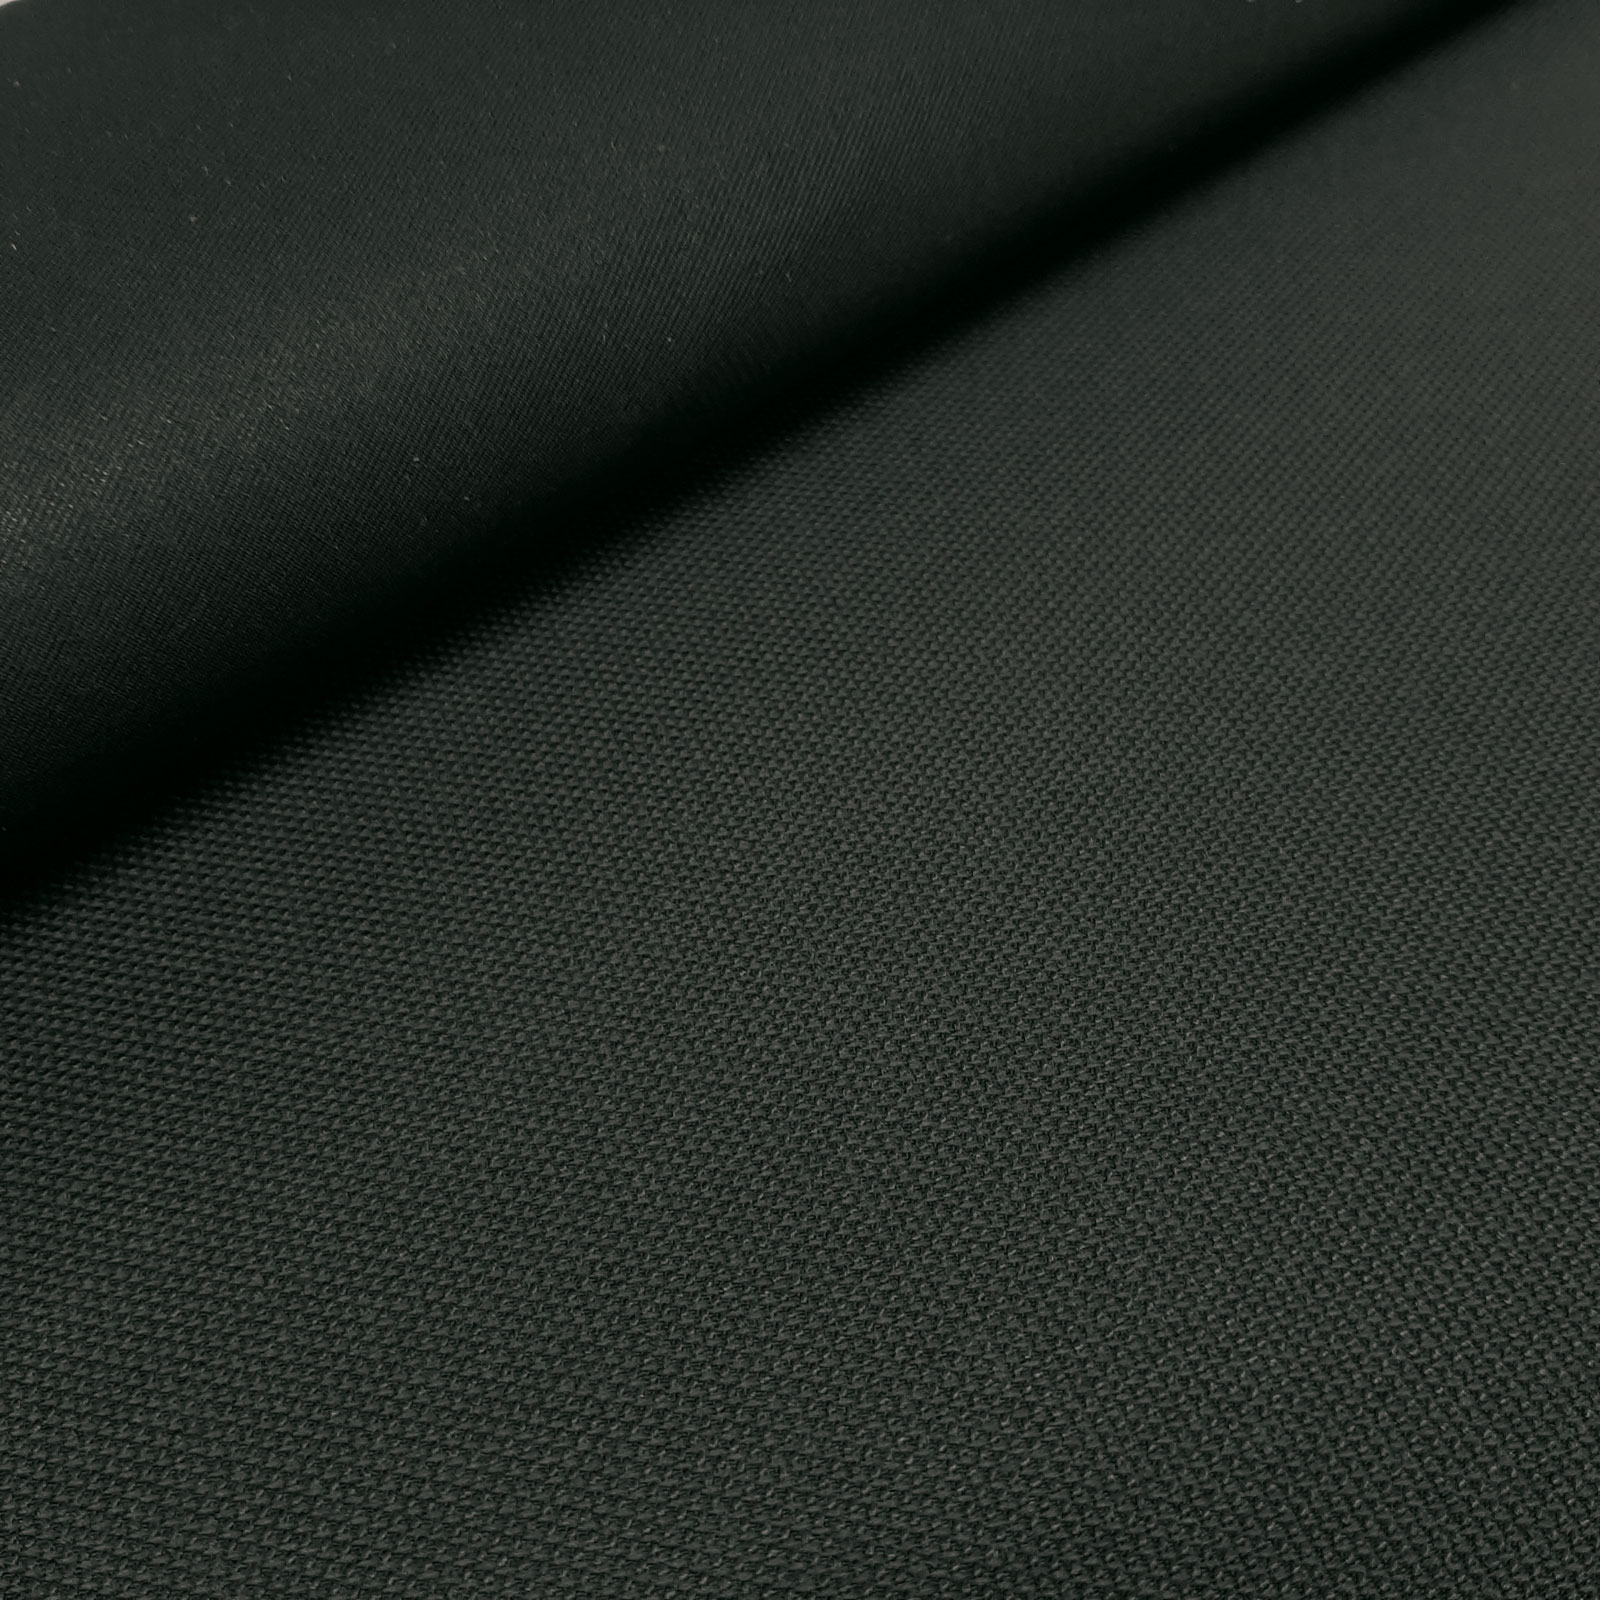 Alonsos - Keprotec® 3-layer laminate - Private Black per metre